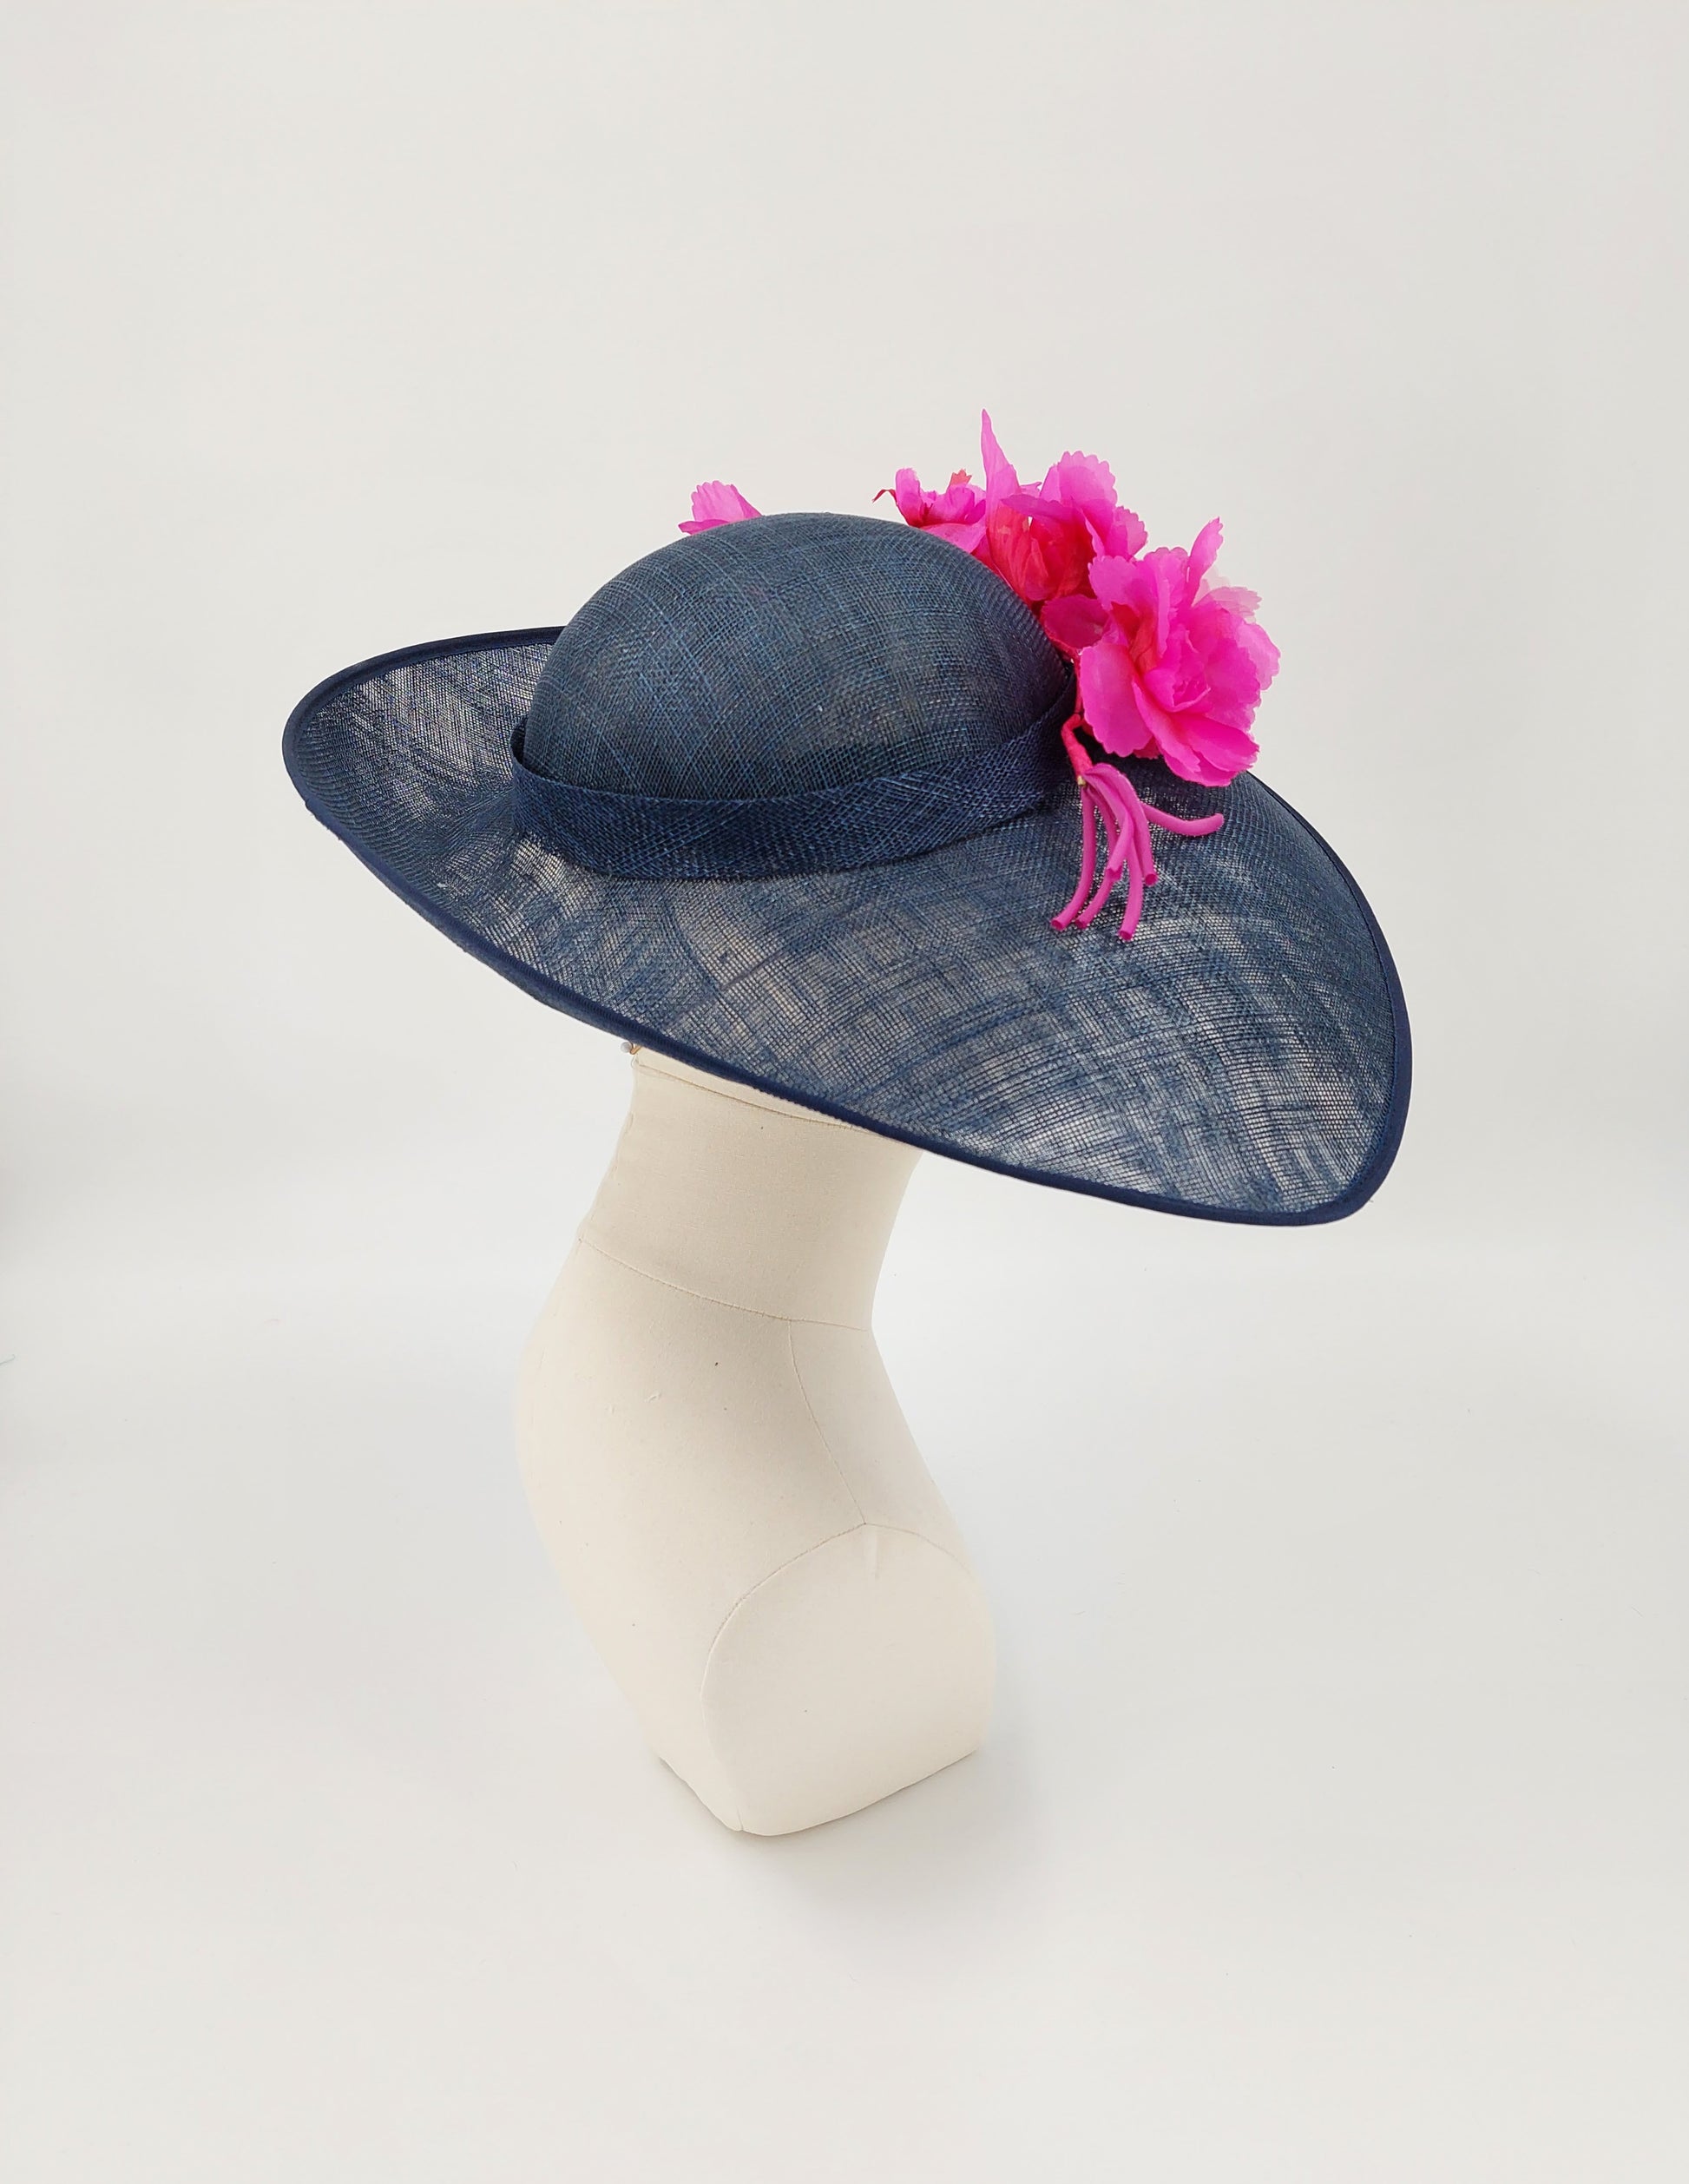 Hat Haven Millinery - Custom hat maker in Louisville, Kentucky. Kentucky Derby hats, fascinators, Ascot hats, wedding hats, church hats, dress hats, fancy hats, milliner, custom hats, Derby hats in Louisville.